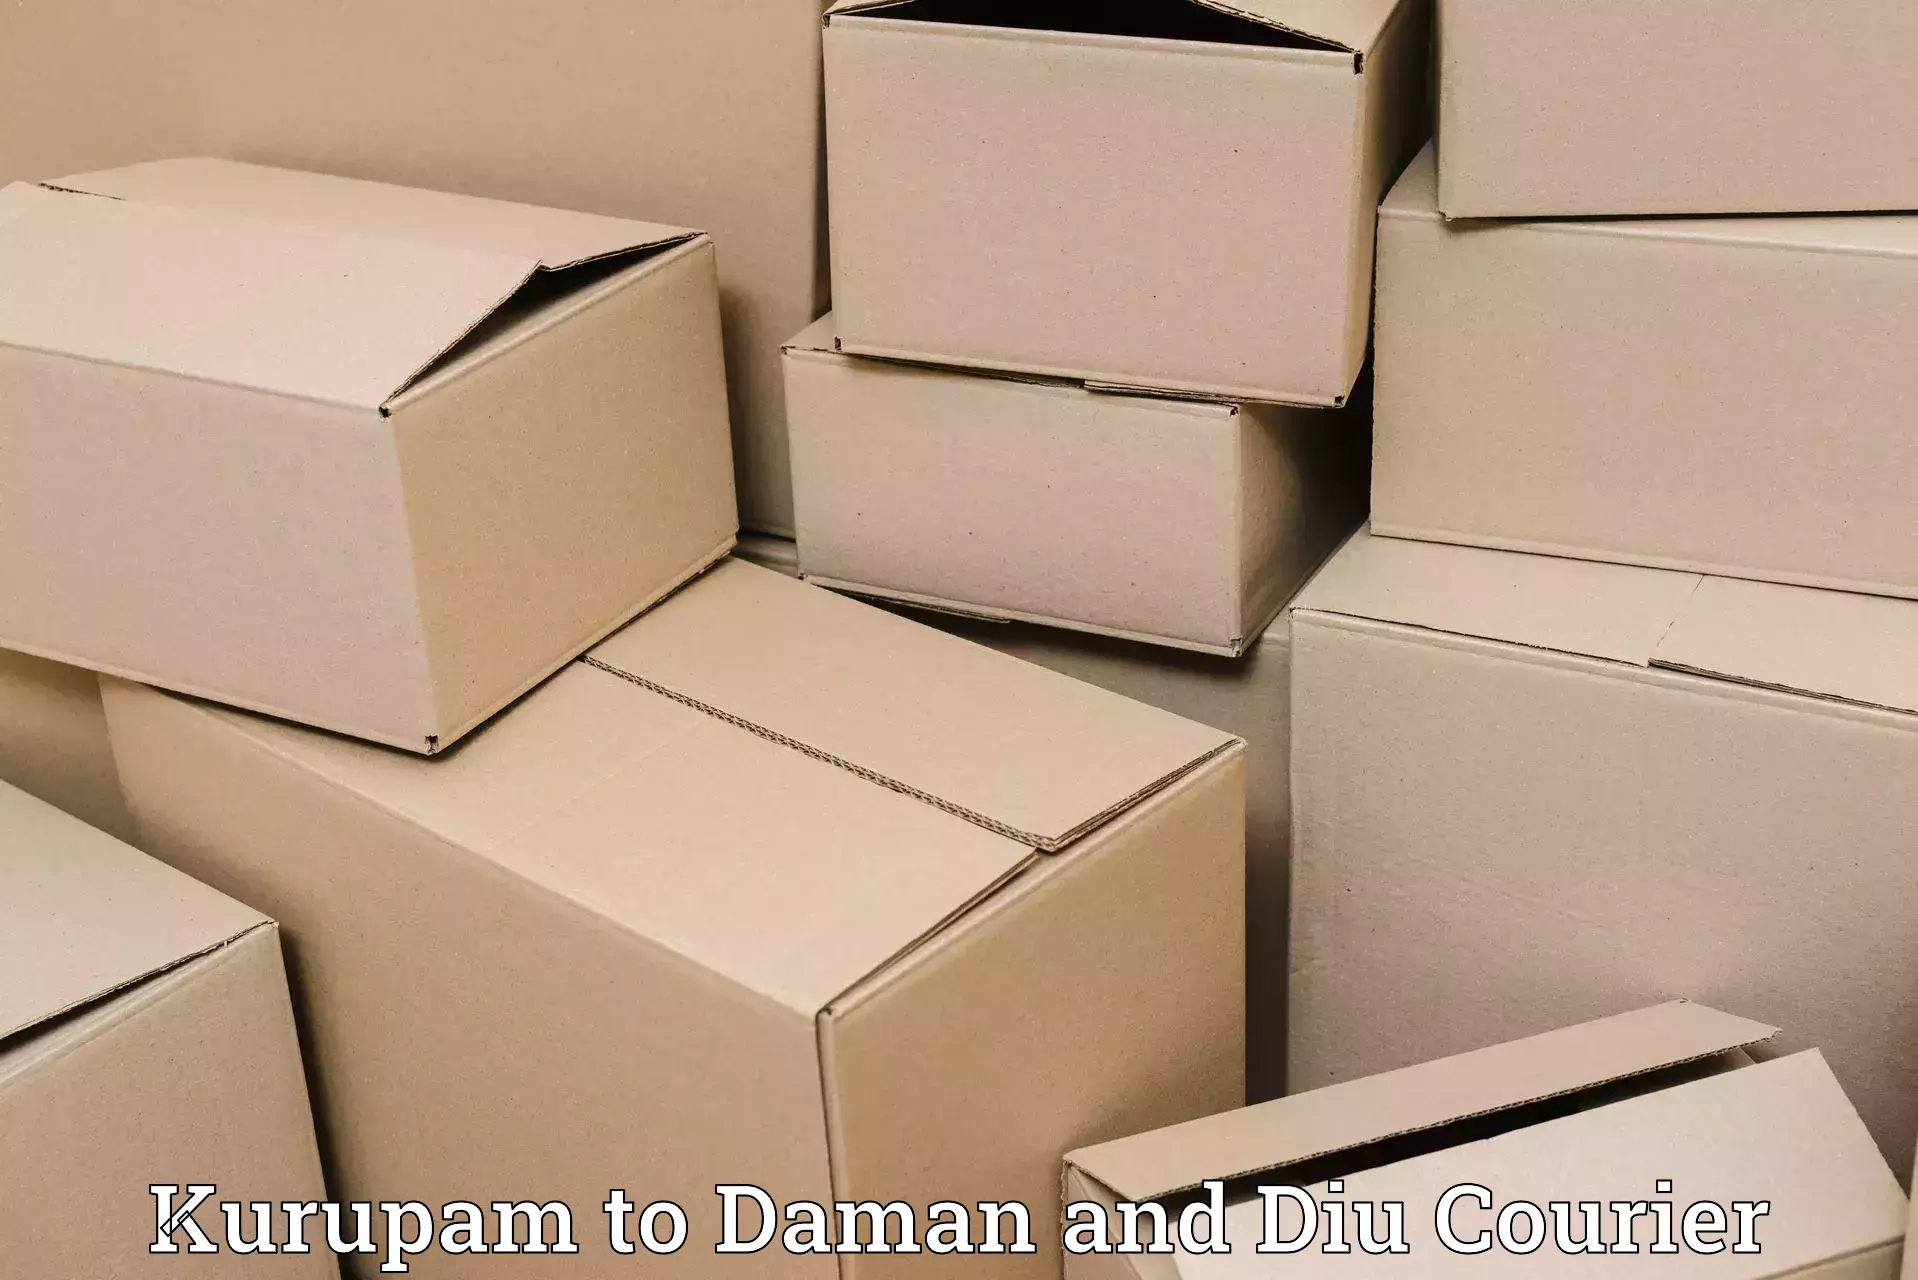 Nationwide shipping capabilities Kurupam to Daman and Diu